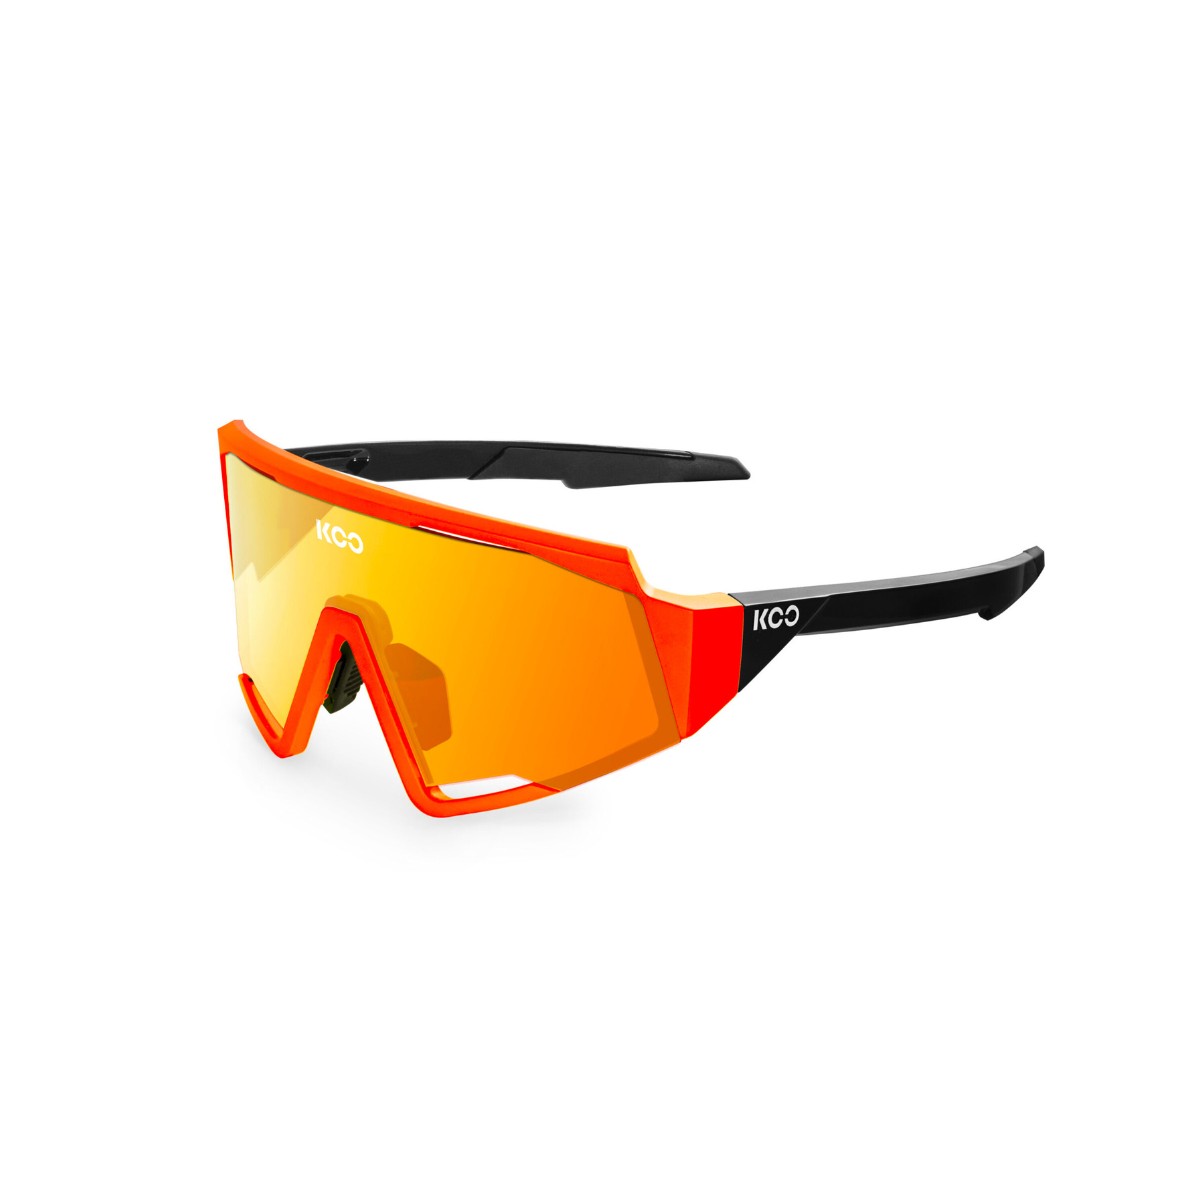 Einzigartige Kombination günstig Kaufen-KOO Spect Orange Fluor Brille. KOO Spect Orange Fluor Brille <![CDATA[KOO Spectro Fluoreszierende Orangenbrille Die neue Fahrradbrille, die auffallen soll. Sie bieten eine einzigartige Kombination aus Mode und Funktion.  ]]>. 